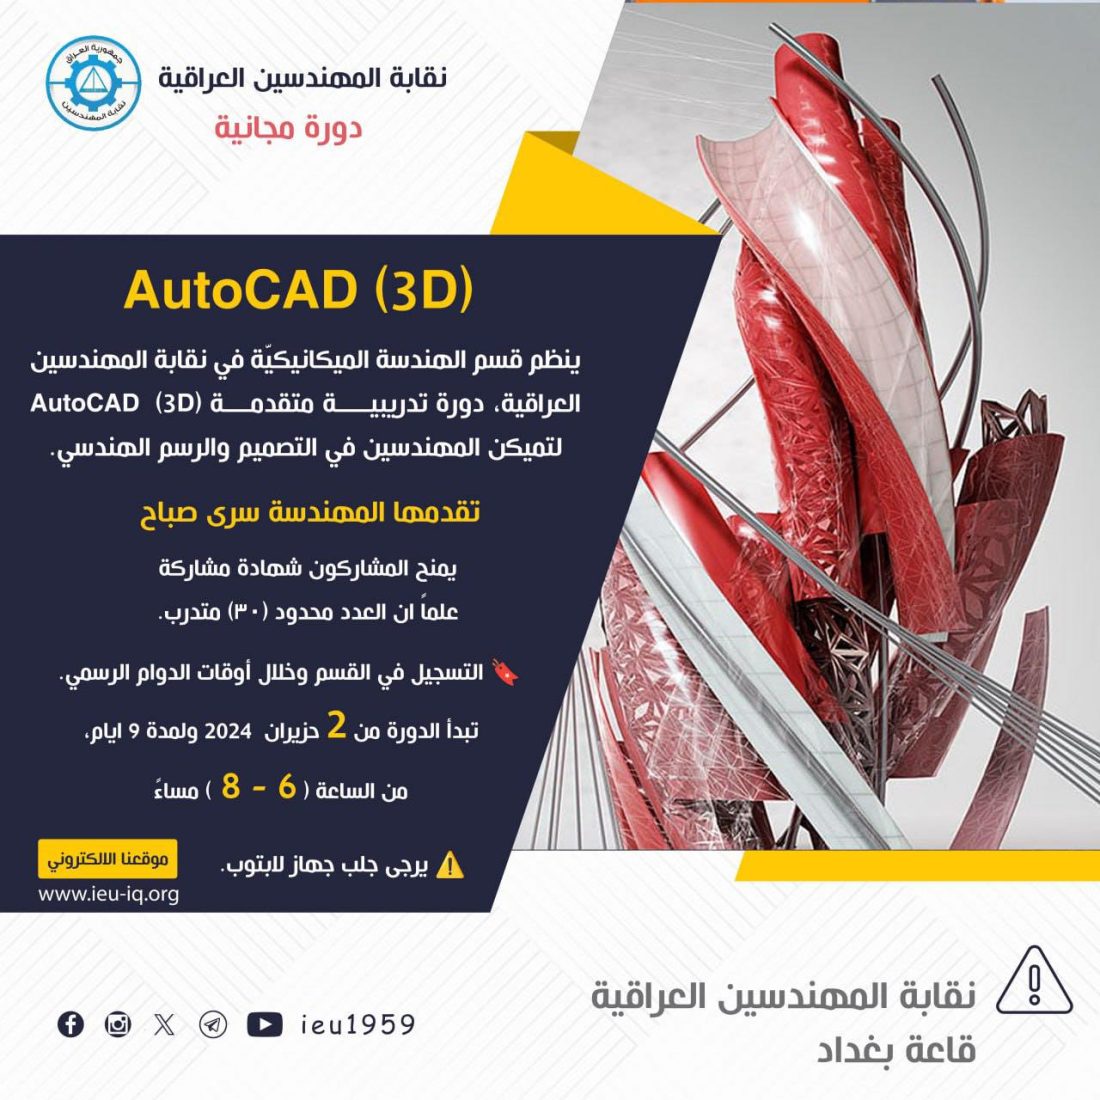 دورة تدريبية متقدمة (3D) AutoCAD